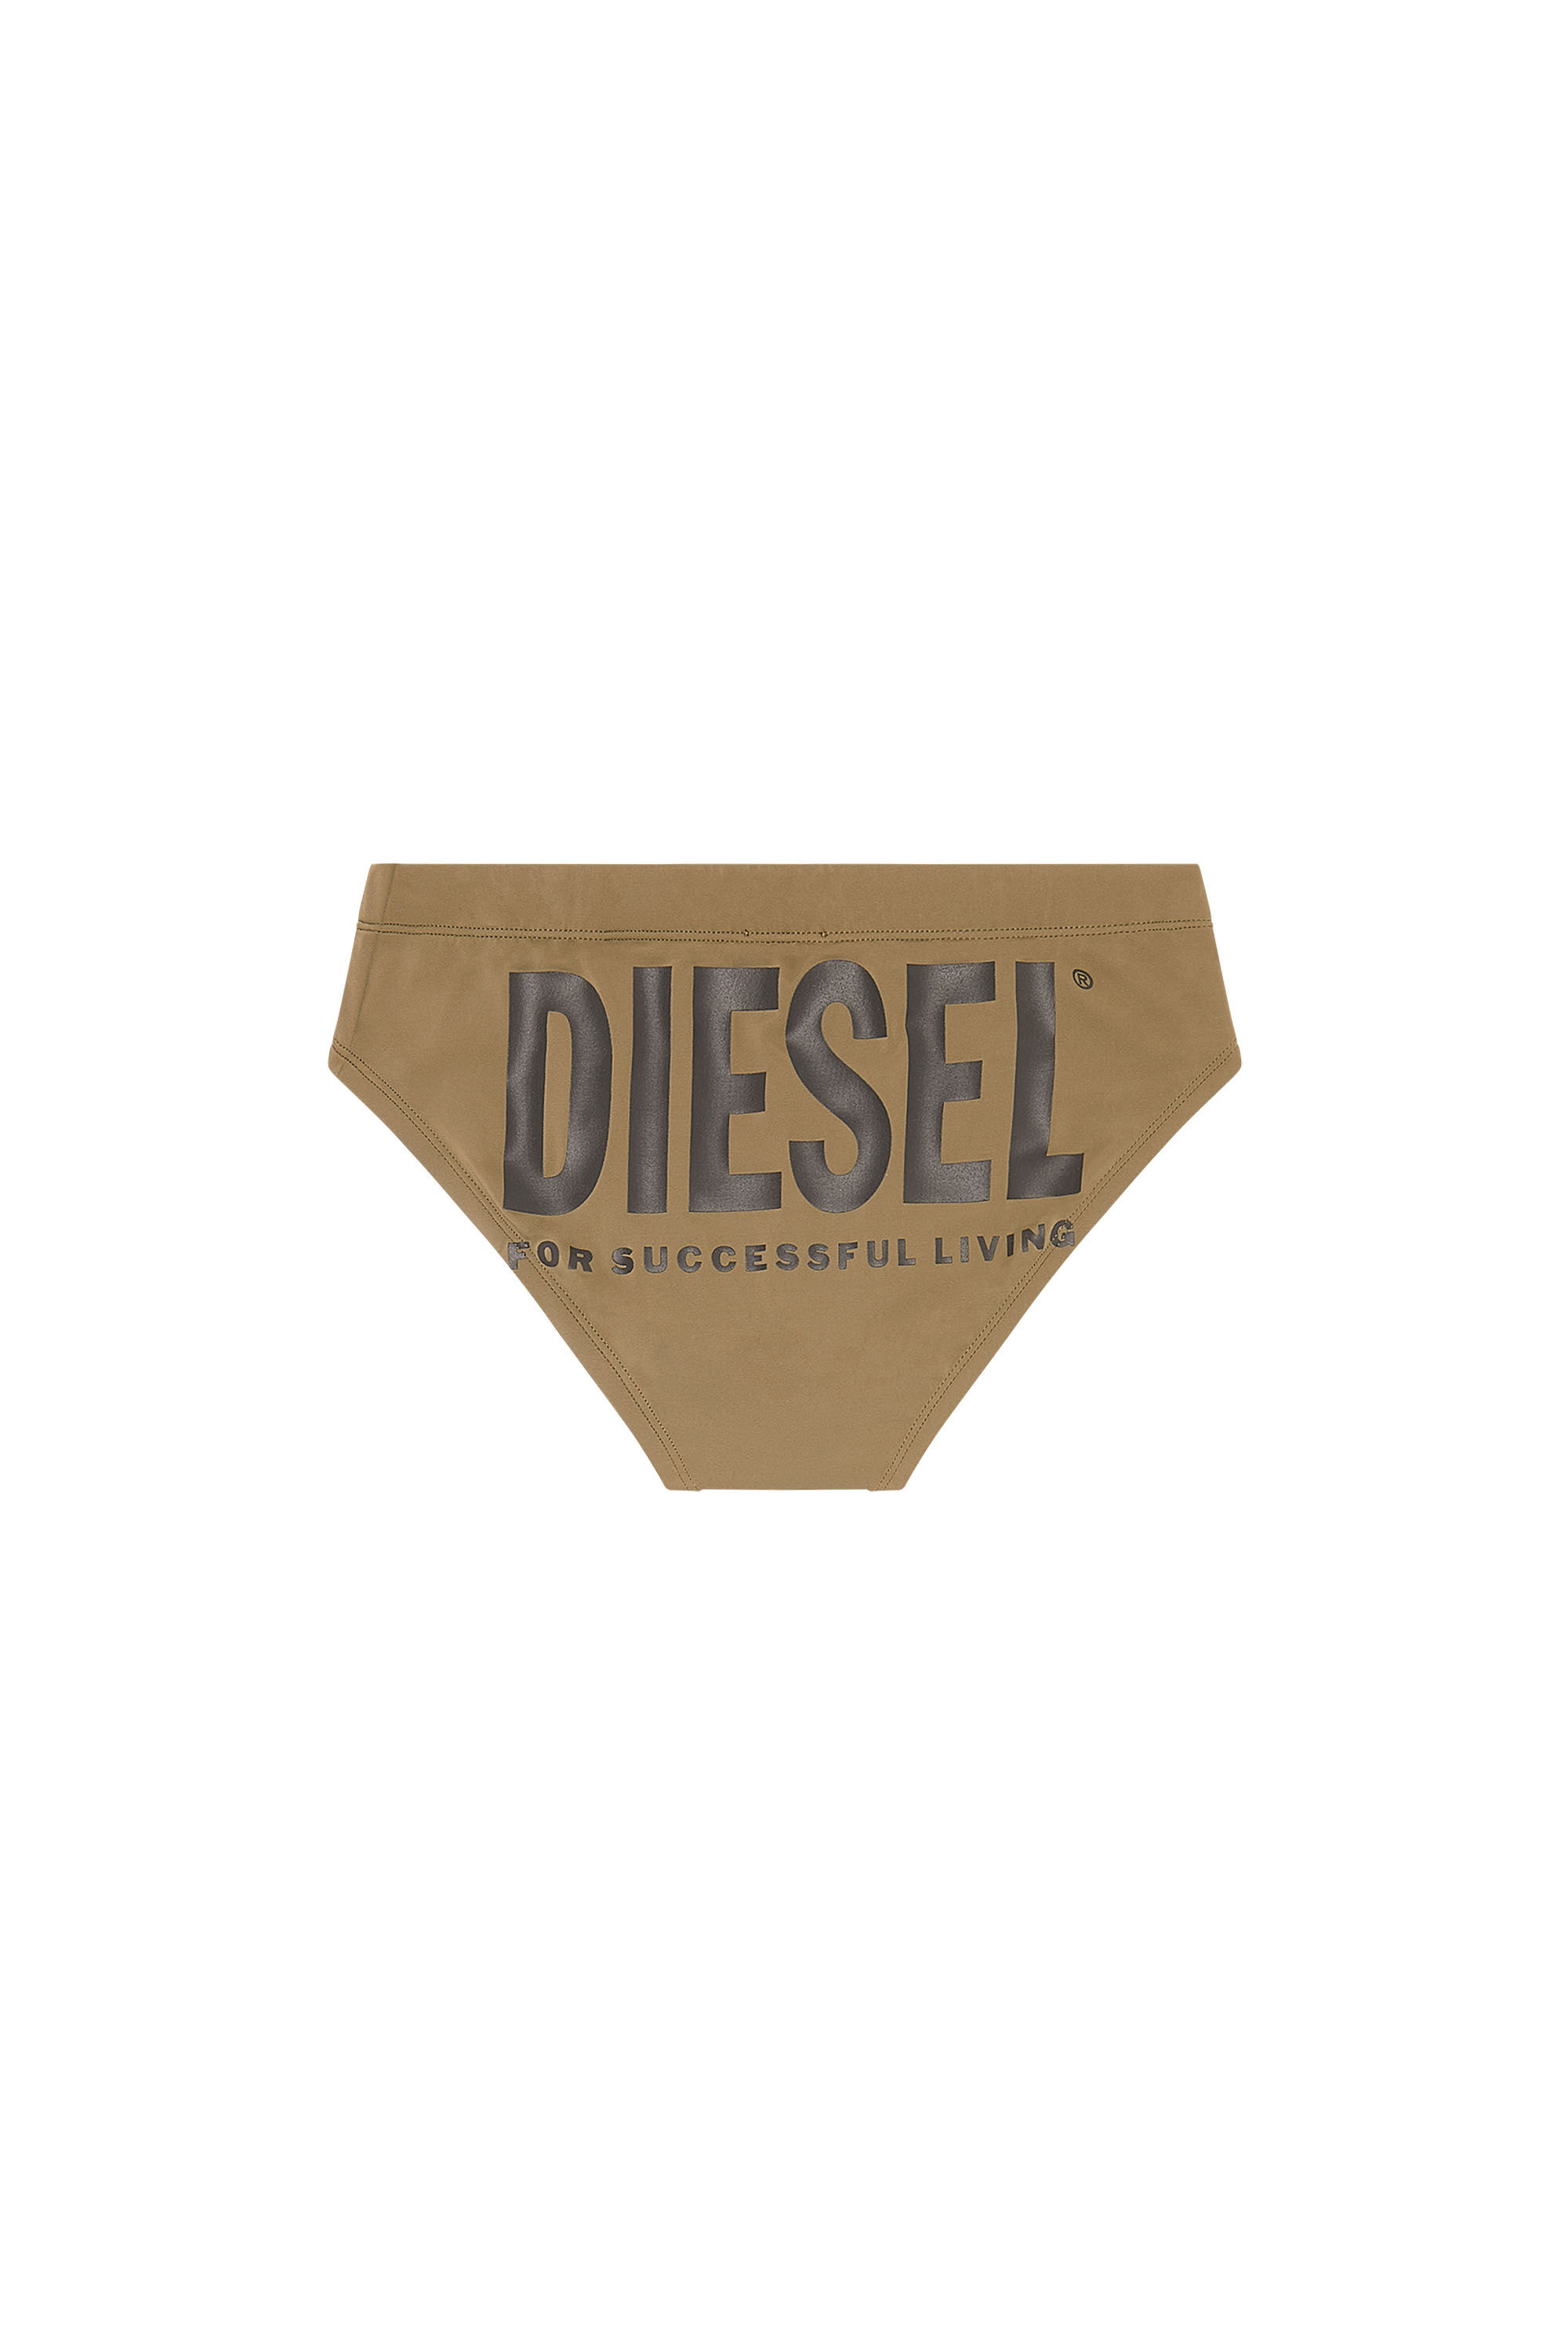 Diesel - BMBR-ALFIE, Military Green - Image 2